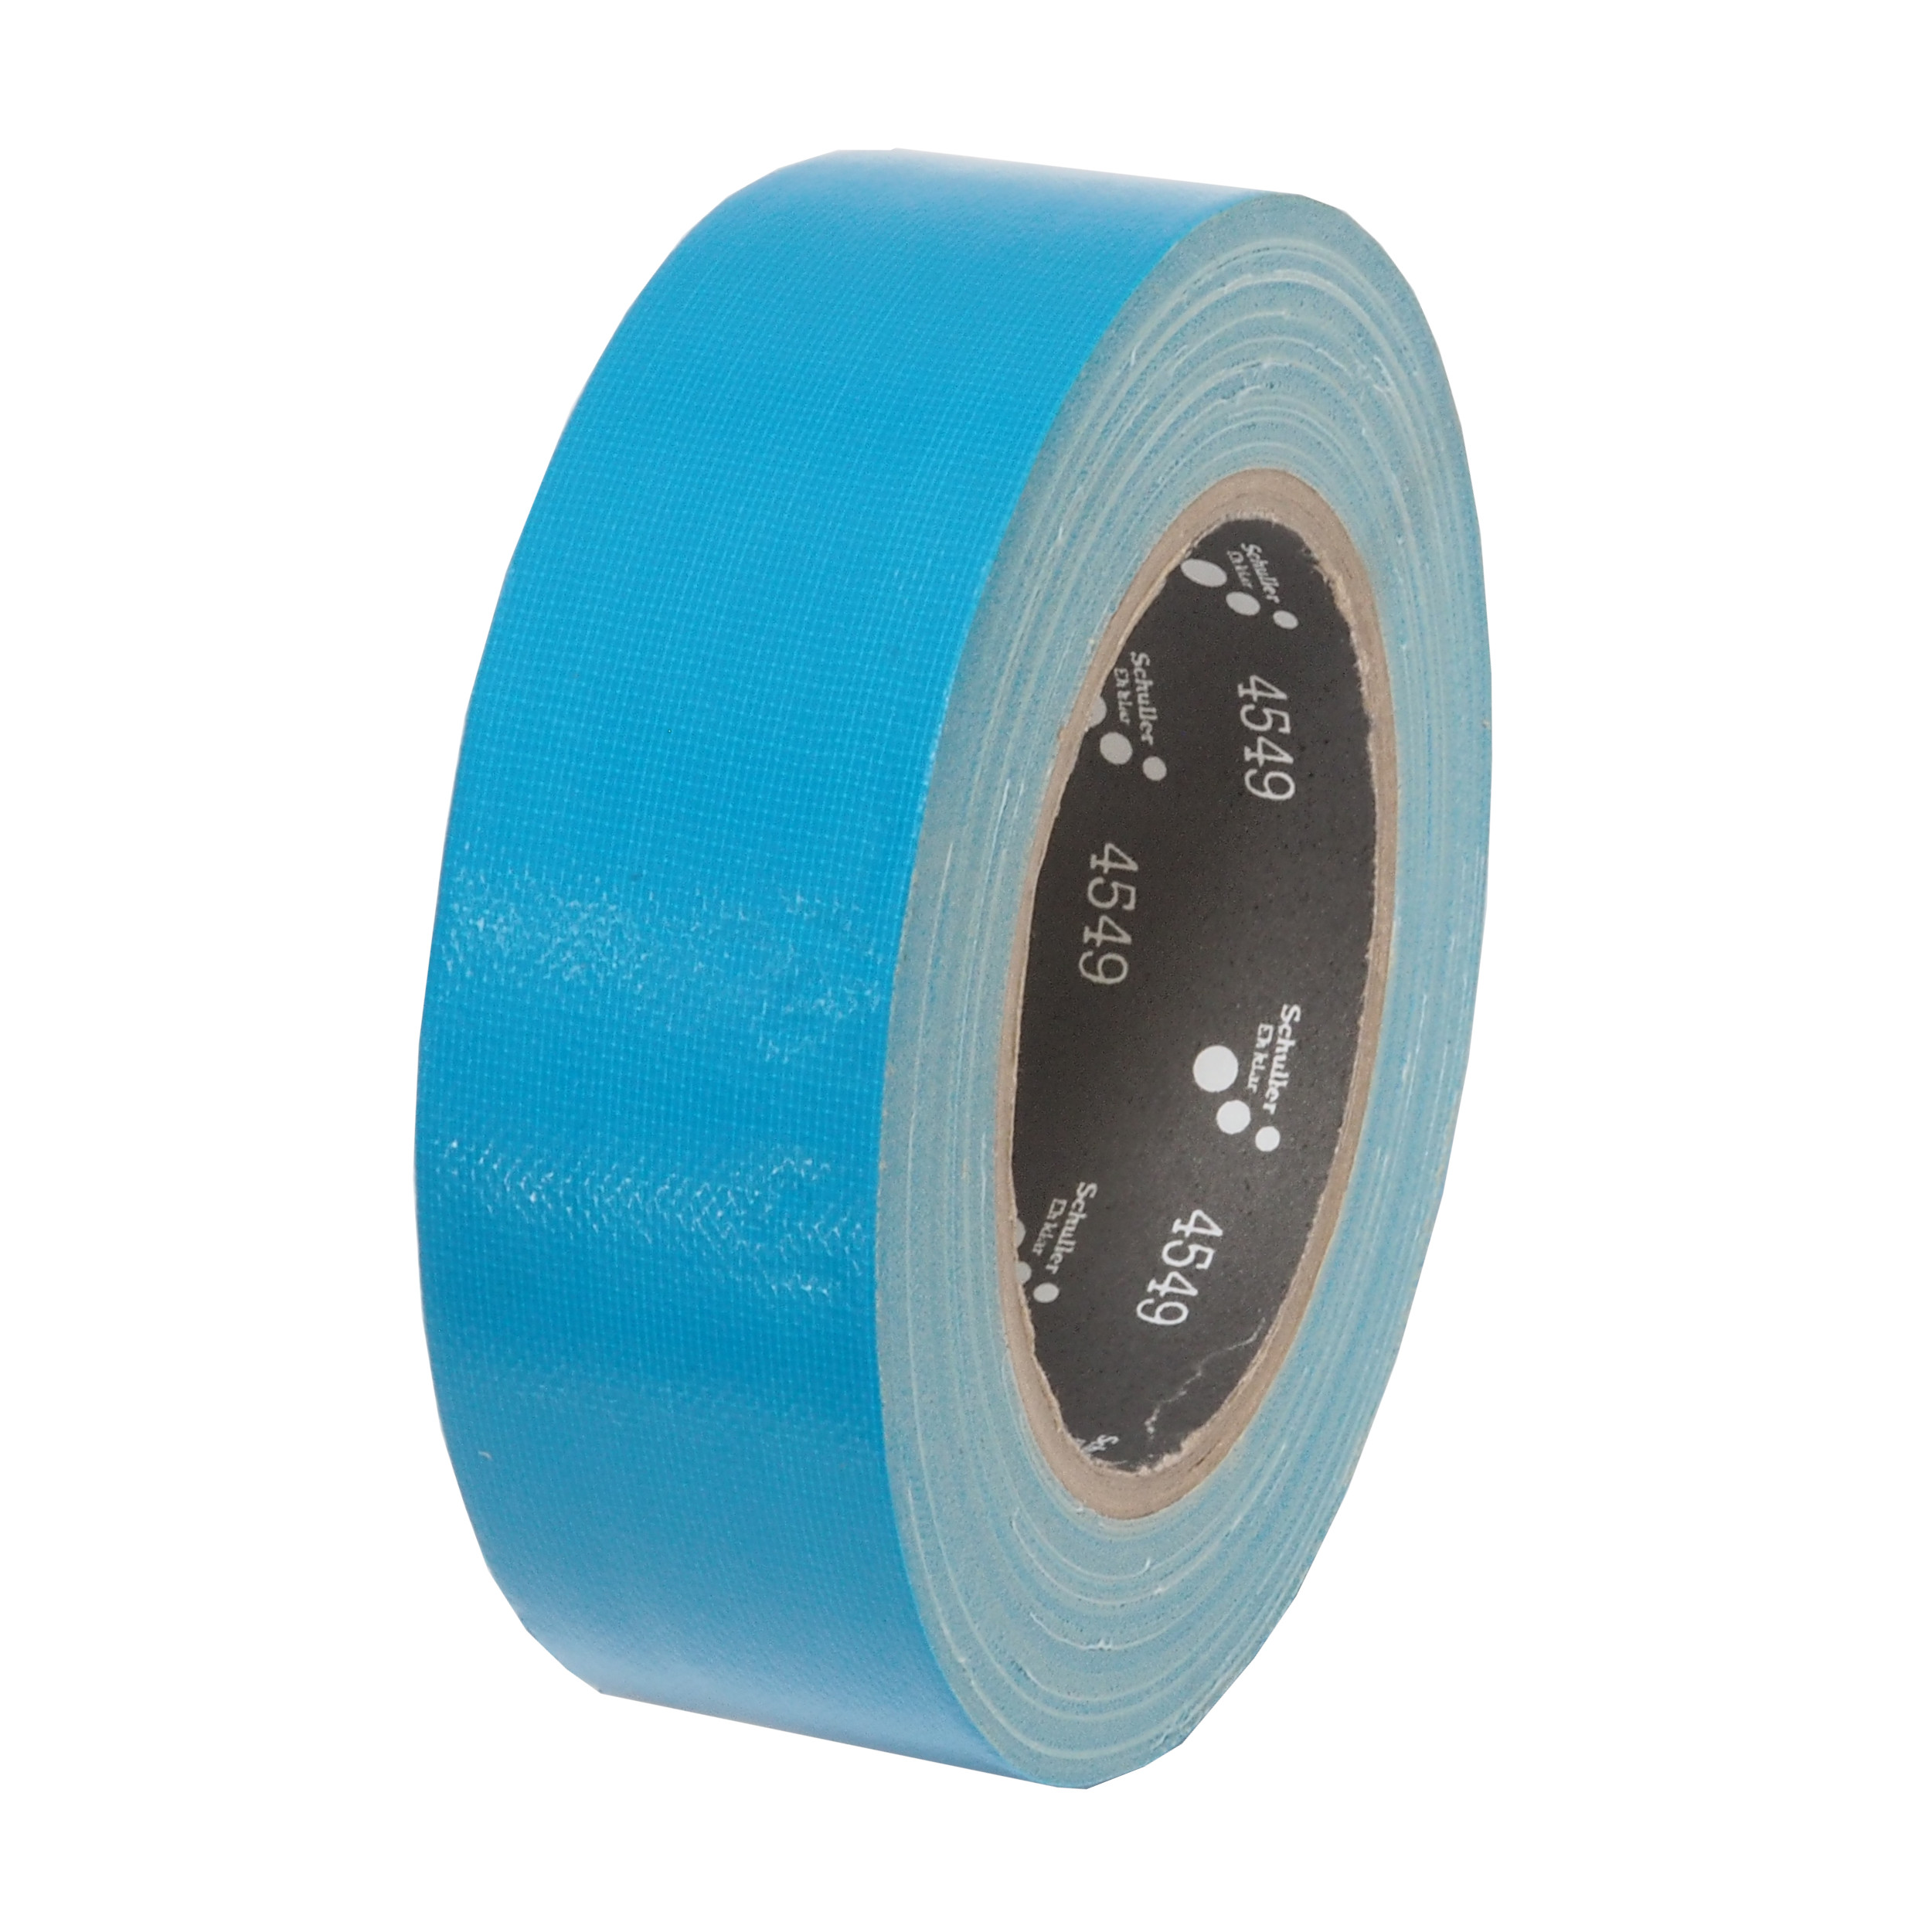 páska lepící, tkaninová, UV odolná, modrá, 30 mm x 25 m 0.26 Kg TOP Sklad4 701408 39